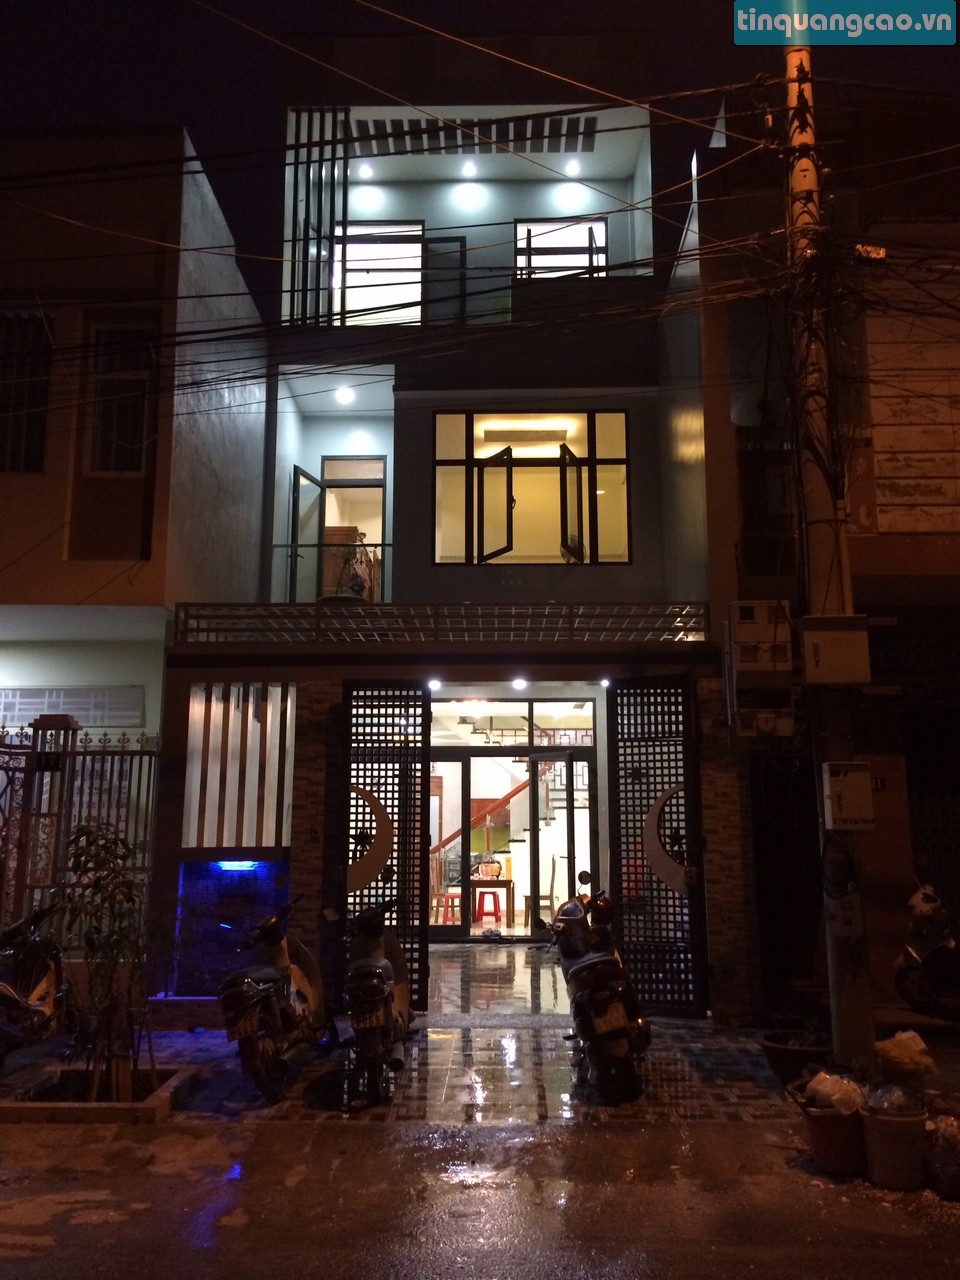 Chính chủ cần bán nhà 3 tầng số 19 đường Bàu Năng 2, phường Hòa Minh, quận Liên Chiểu